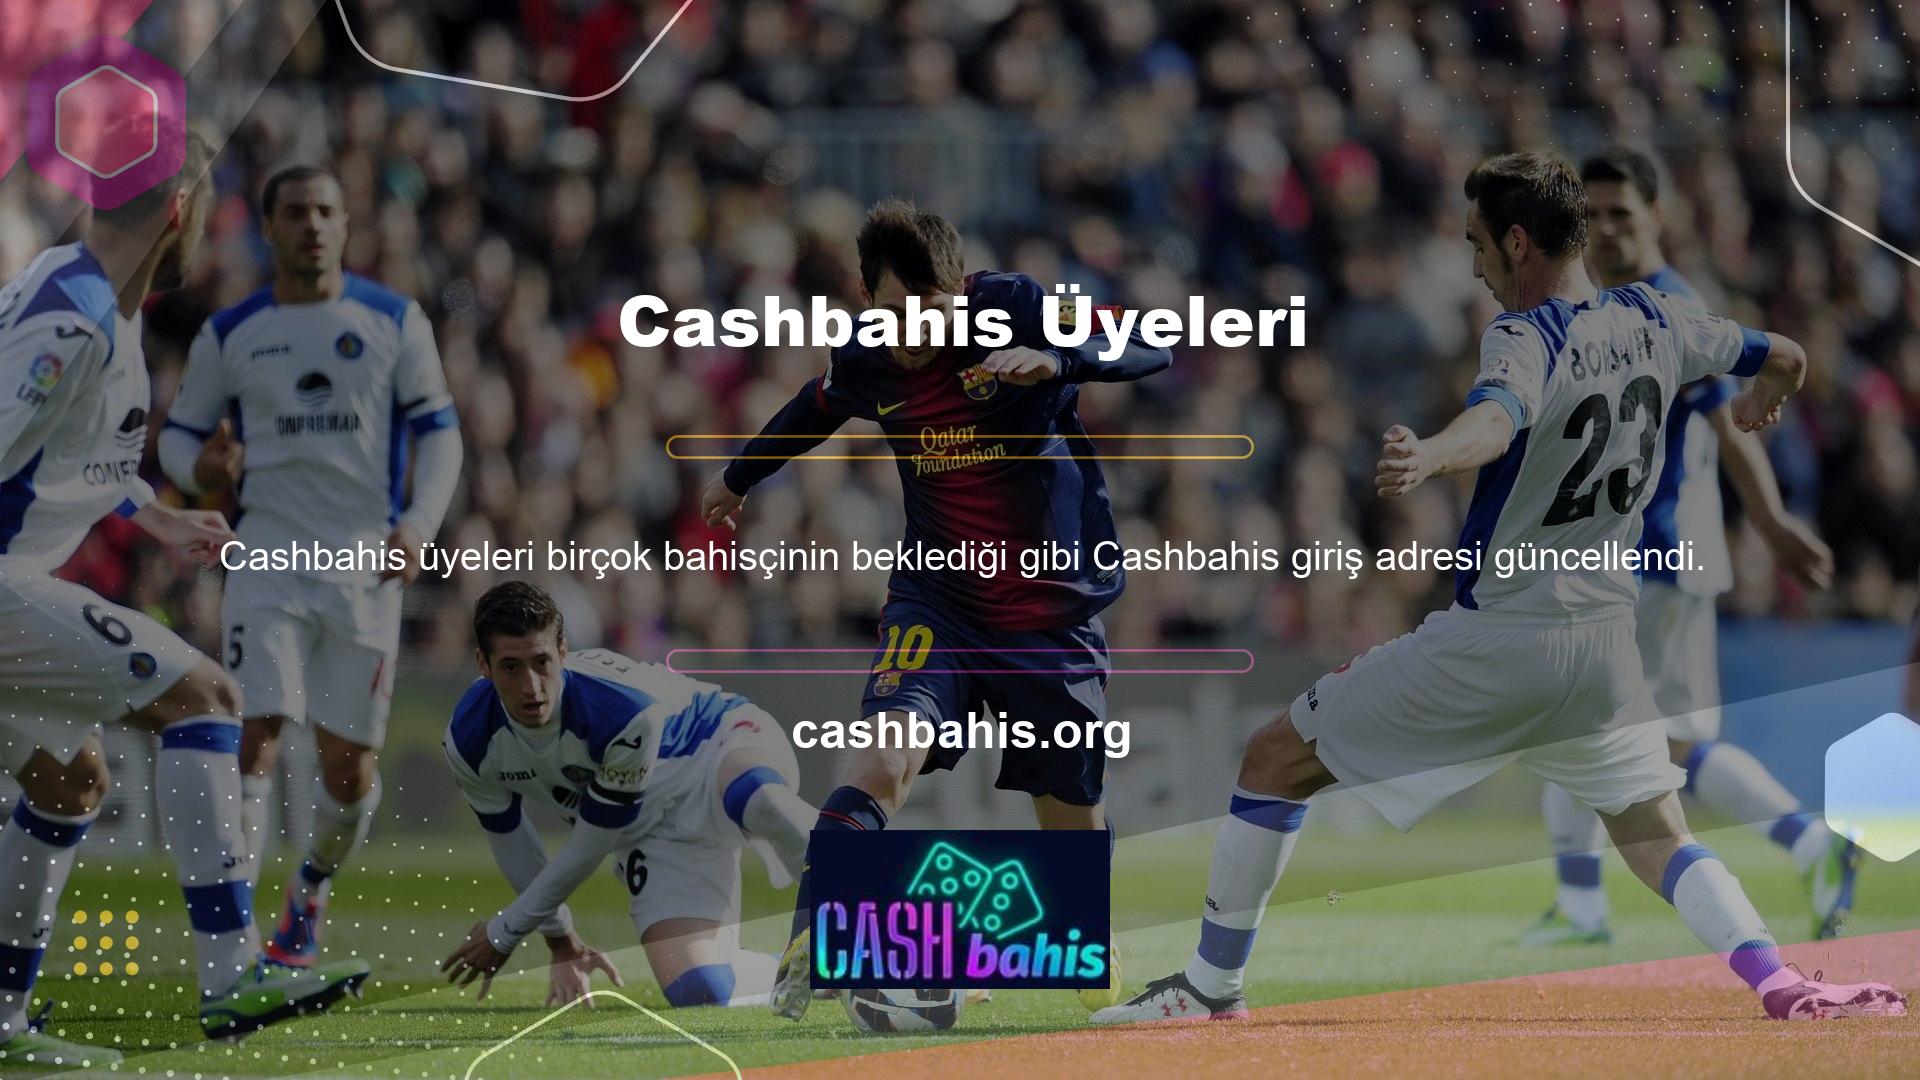 Cashbahis, küresel oyun pazarında uzun süredir var ve dünyanın en güçlü oyun şirketlerinden bazılarına ev sahipliği yapan bir bölgede bulunuyor